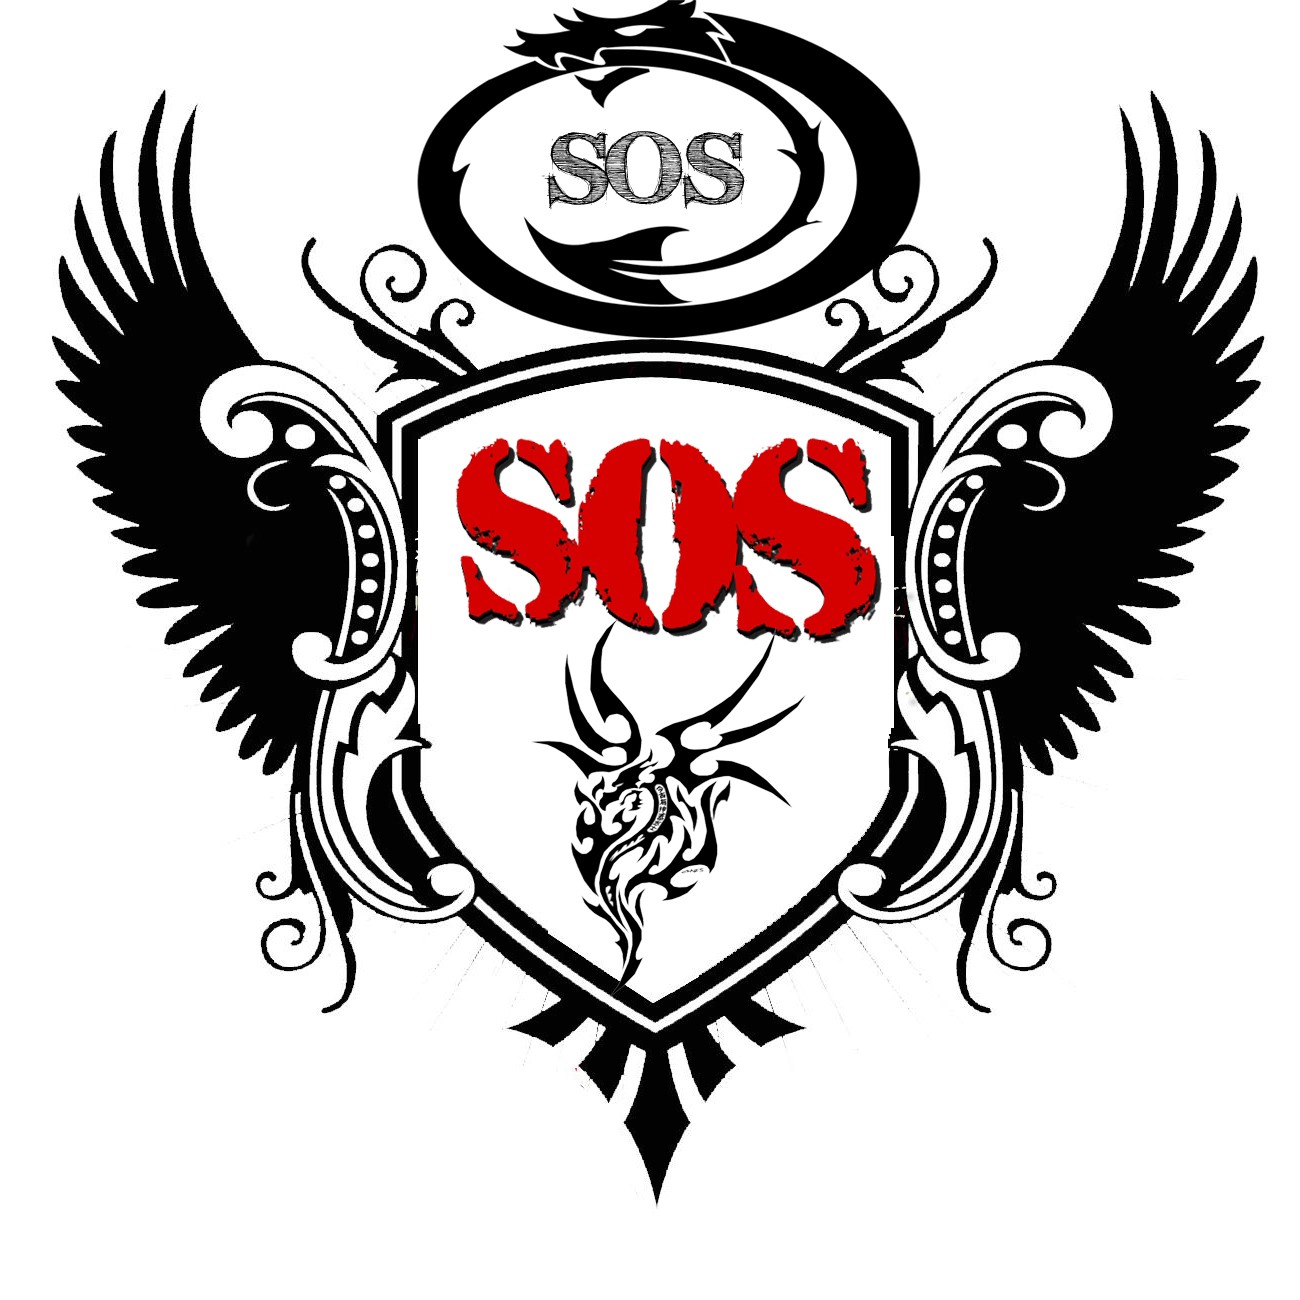 [SOS]SOS vào xem logo mới này có đc ko Sos1210